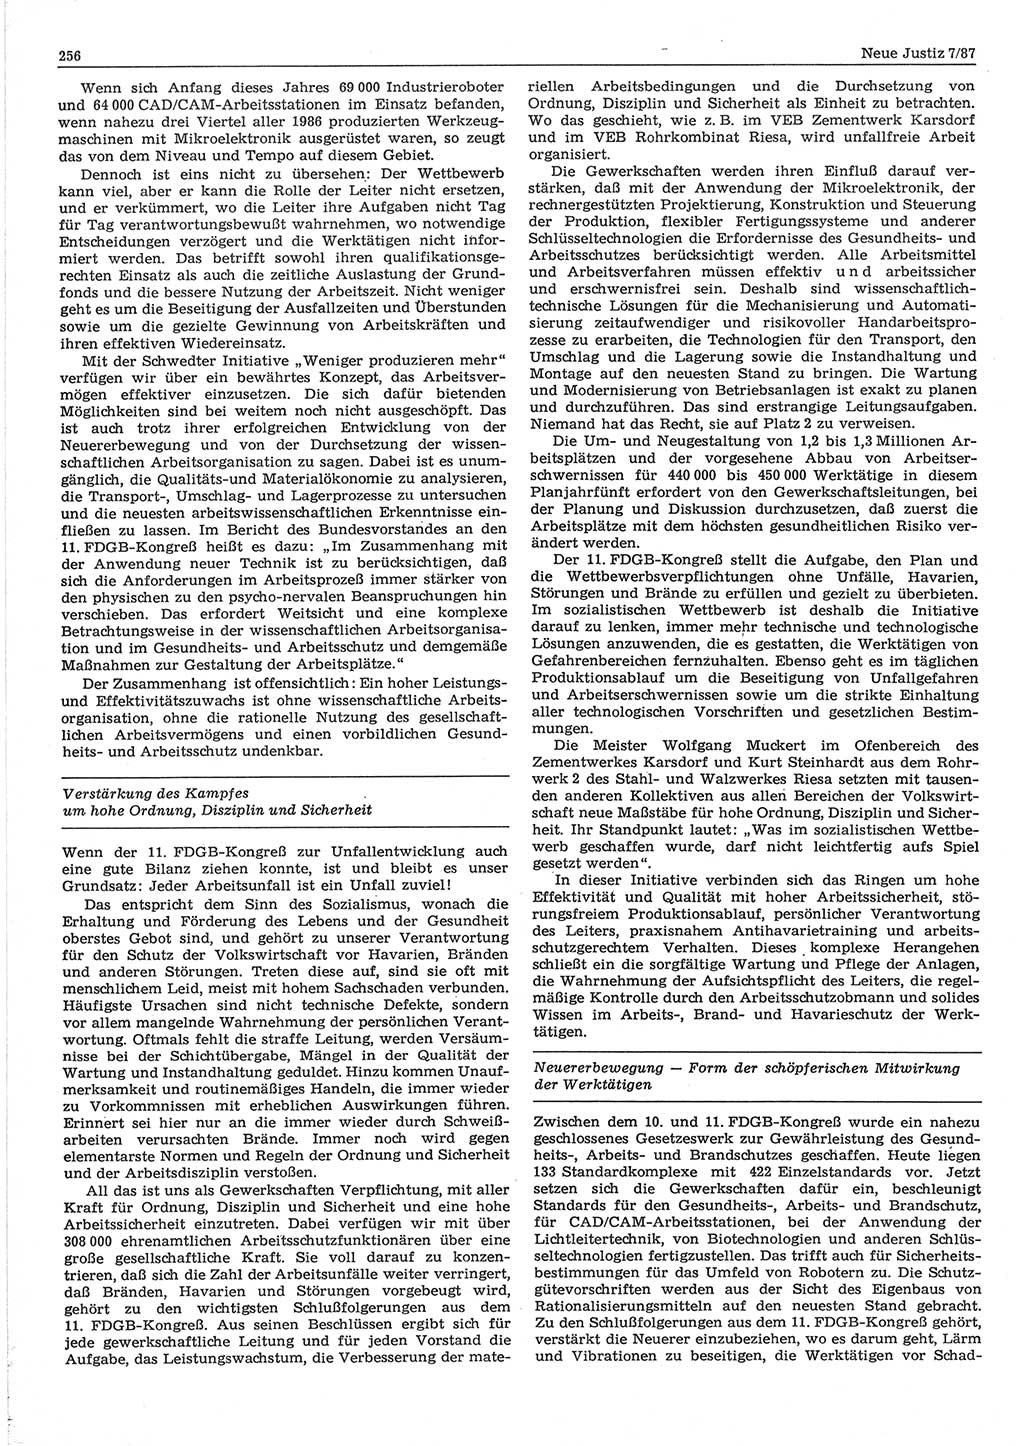 Neue Justiz (NJ), Zeitschrift für sozialistisches Recht und Gesetzlichkeit [Deutsche Demokratische Republik (DDR)], 41. Jahrgang 1987, Seite 256 (NJ DDR 1987, S. 256)